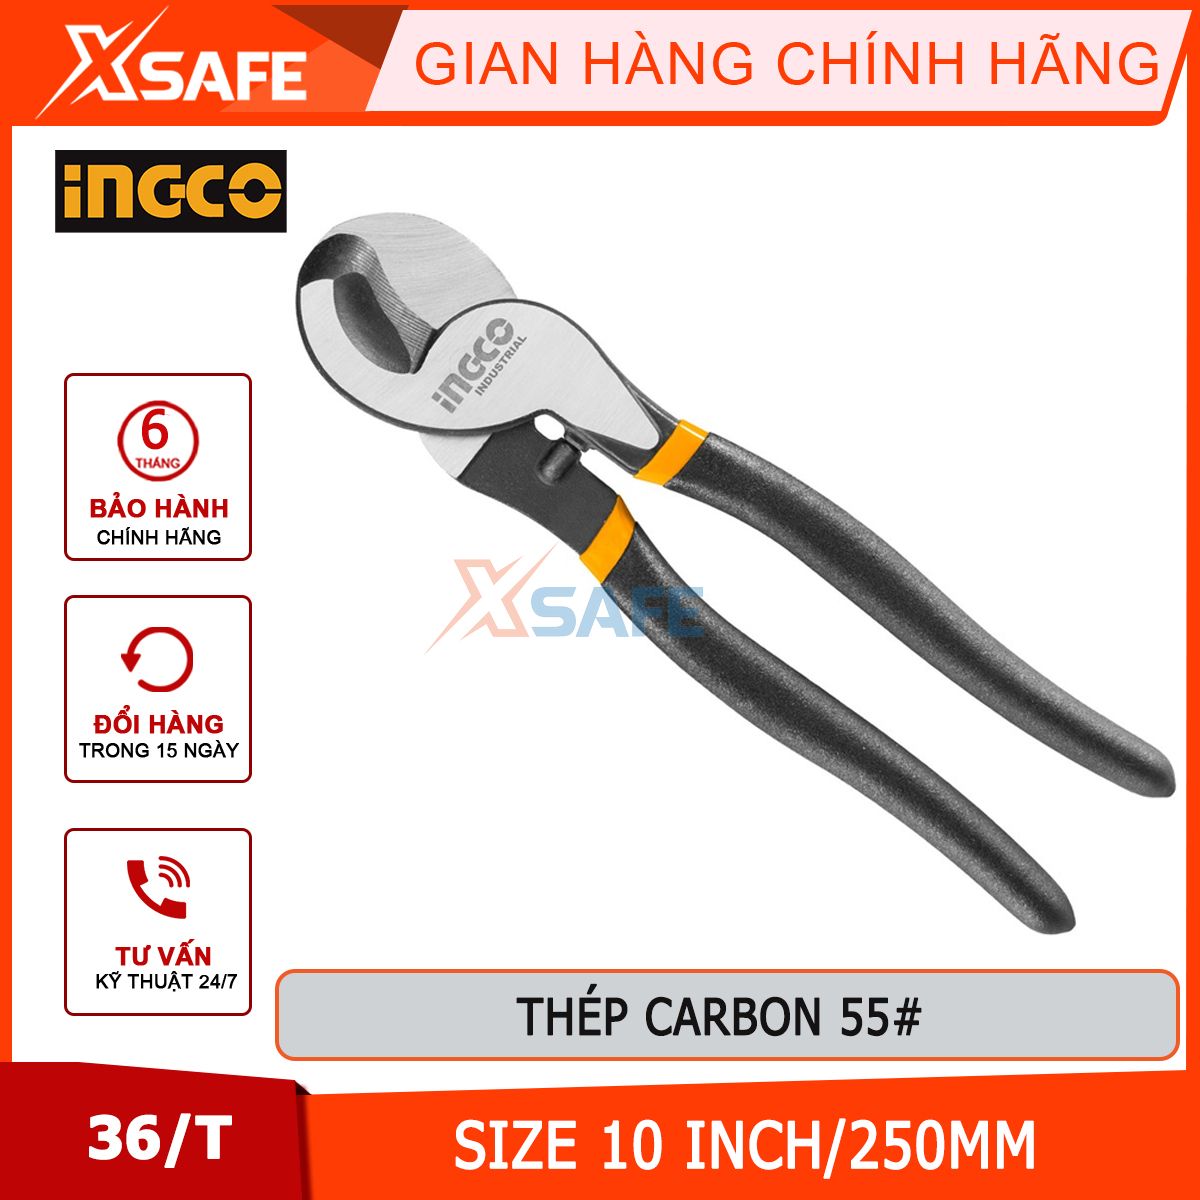 Kìm cắt cáp điện đầu lớn INGCO HHCCB0210 kềm có kích thước 10 inch/250mm cắt được các vật cứng như cáp đồng dây thép dây kẽm...